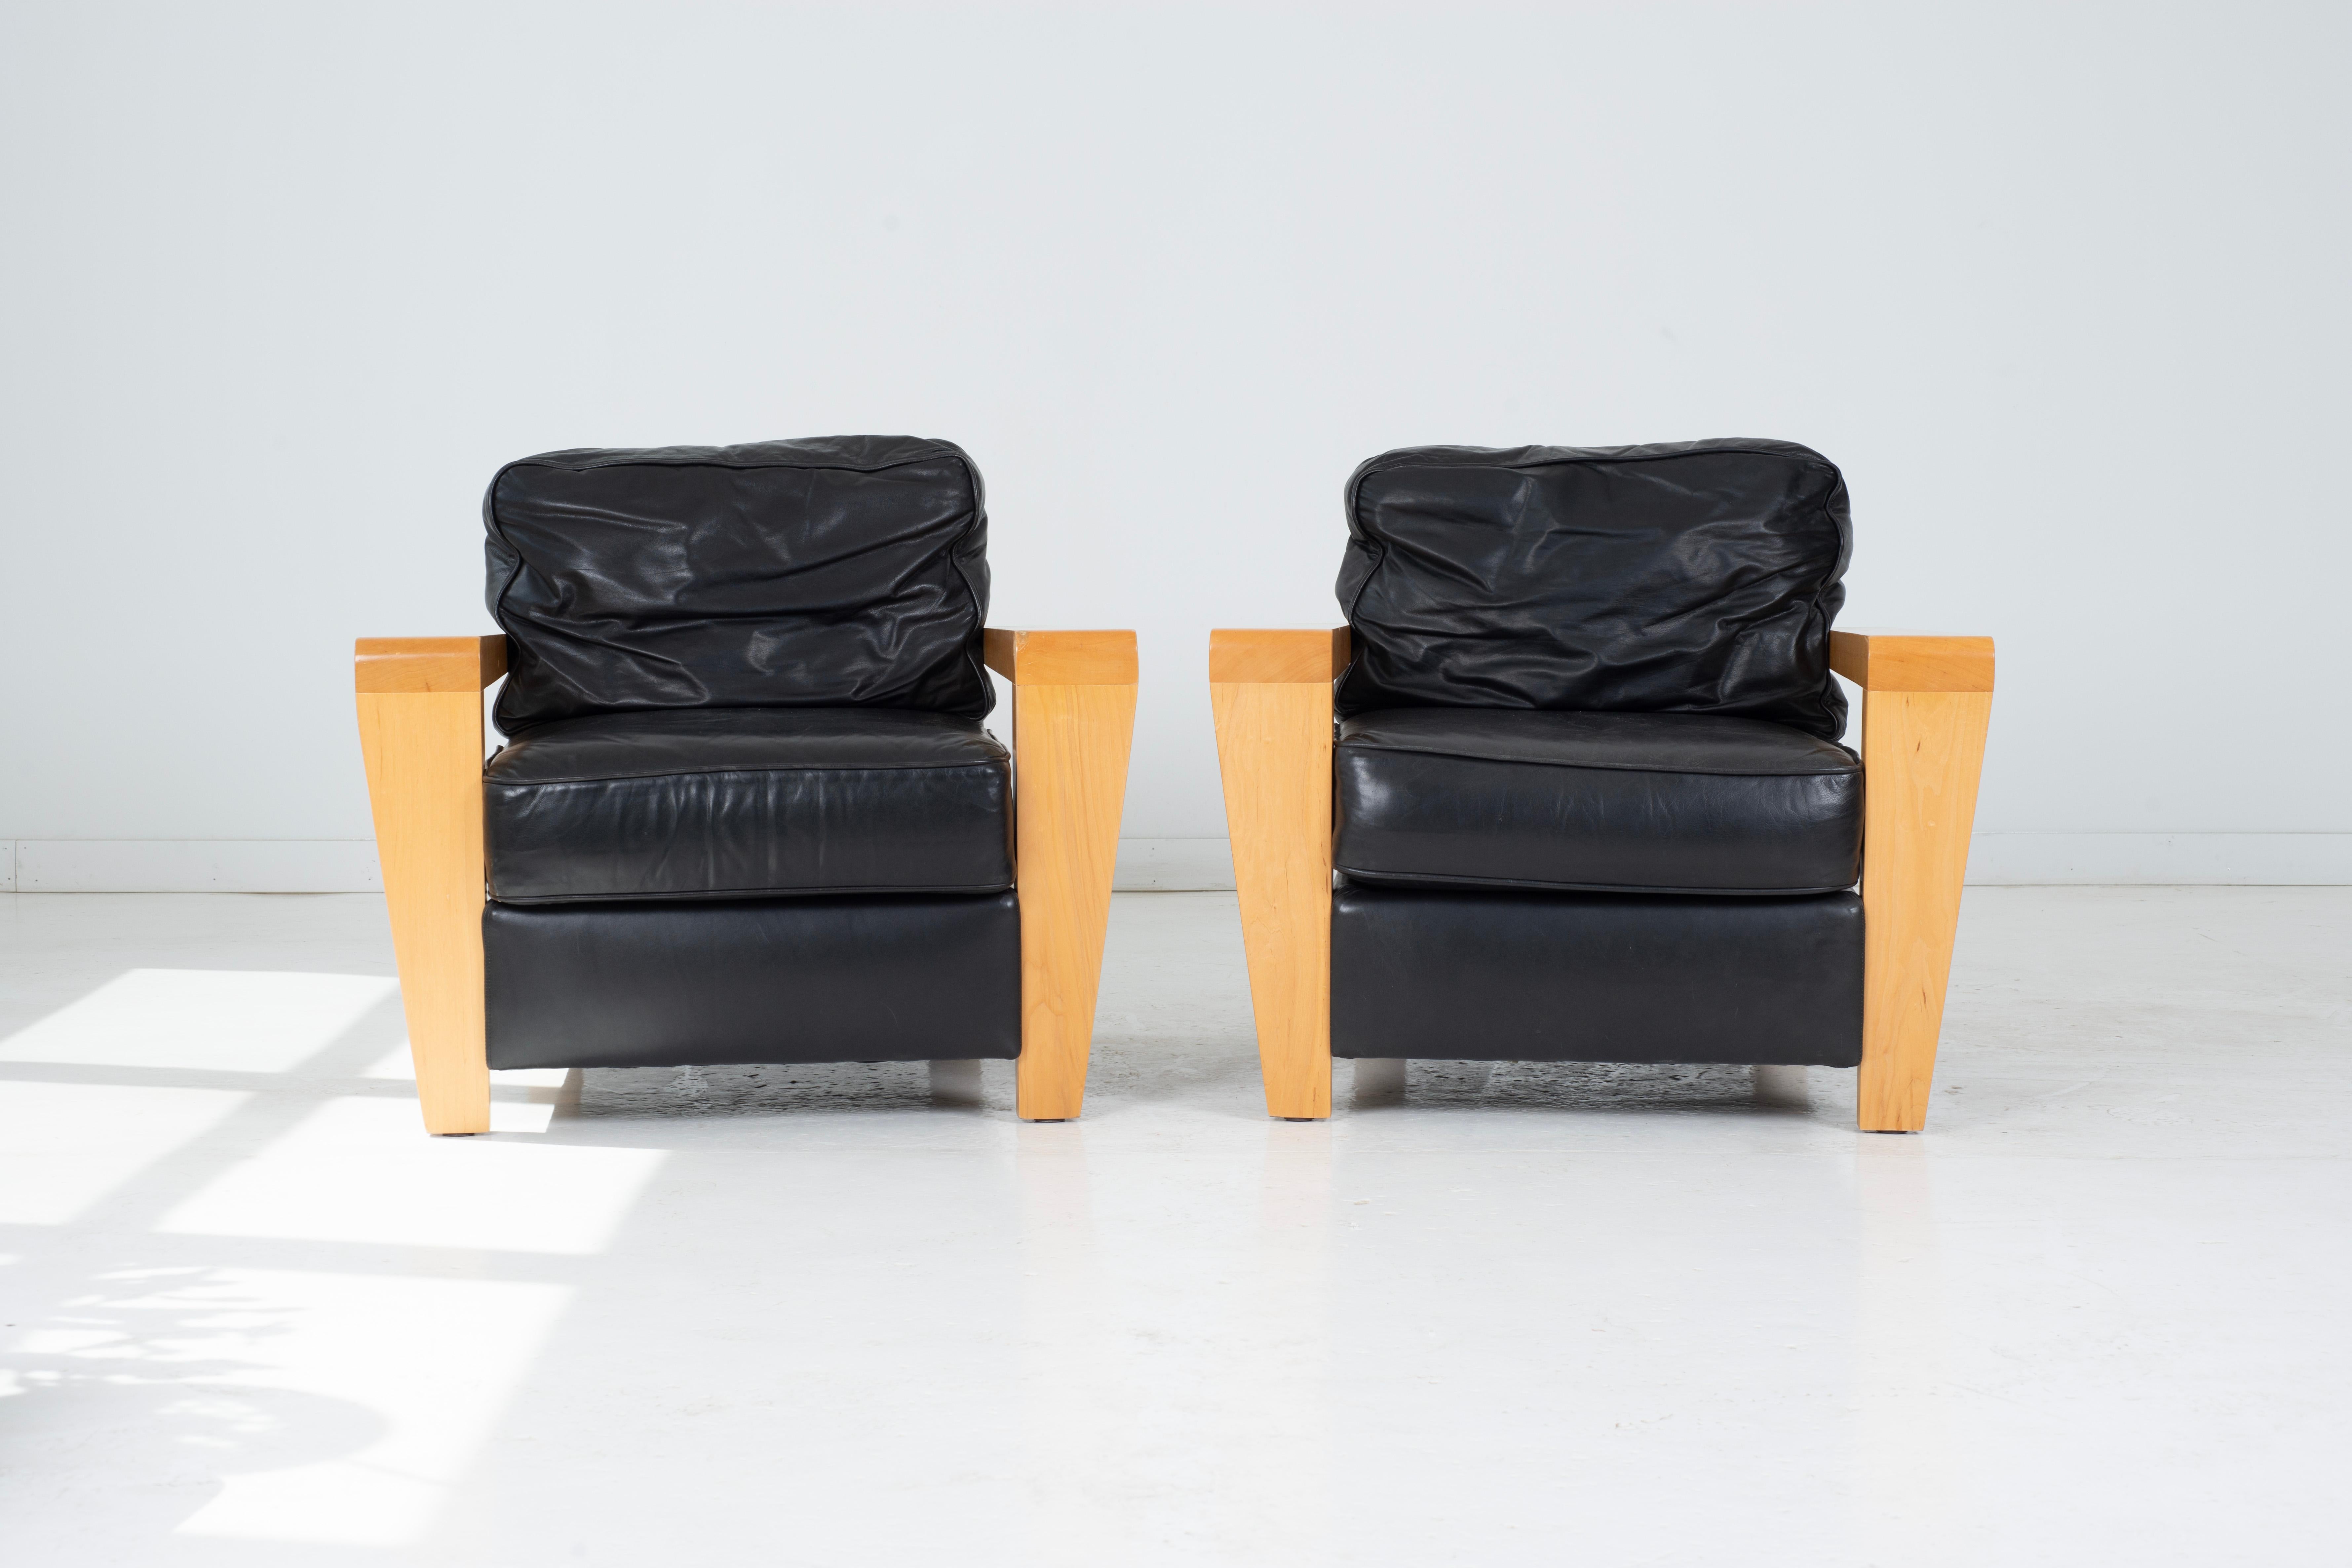 Voici une paire saisissante de chaises longues et d'ottomans contemporains en cuir noir, conçus exclusivement pour Thayer Coggin. Ces pièces sophistiquées mettent en valeur la beauté d'un cuir original et joliment usé, dégageant un charme et un